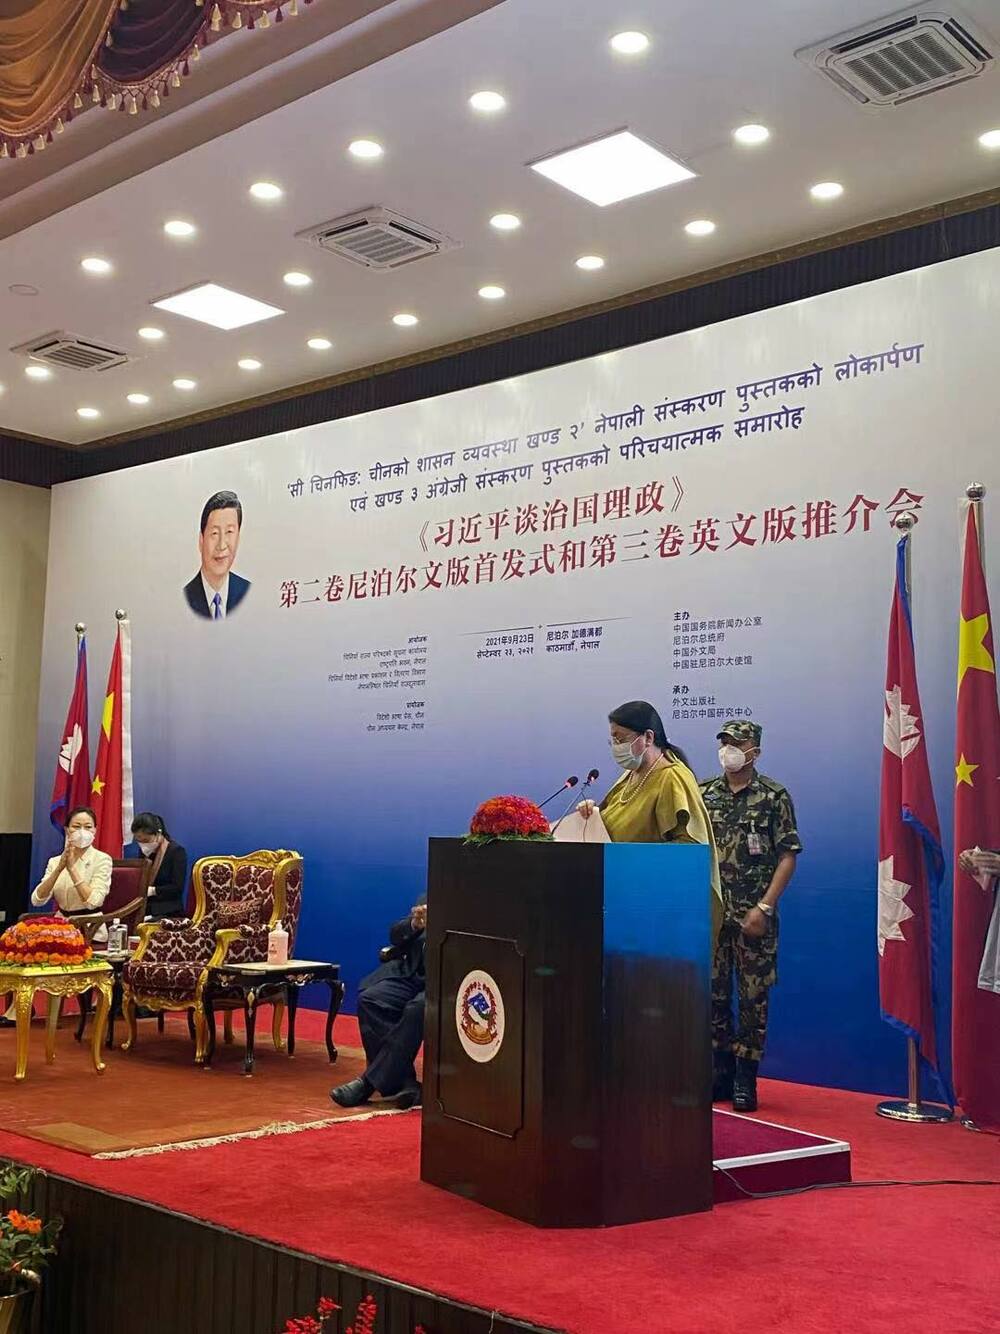 नेपाल एक चीन नीति प्रति सदैब प्रतिबद्ध रहेको नेपालकी राष्ट्रपतिको भनाइ_fororder_Nepali News 1